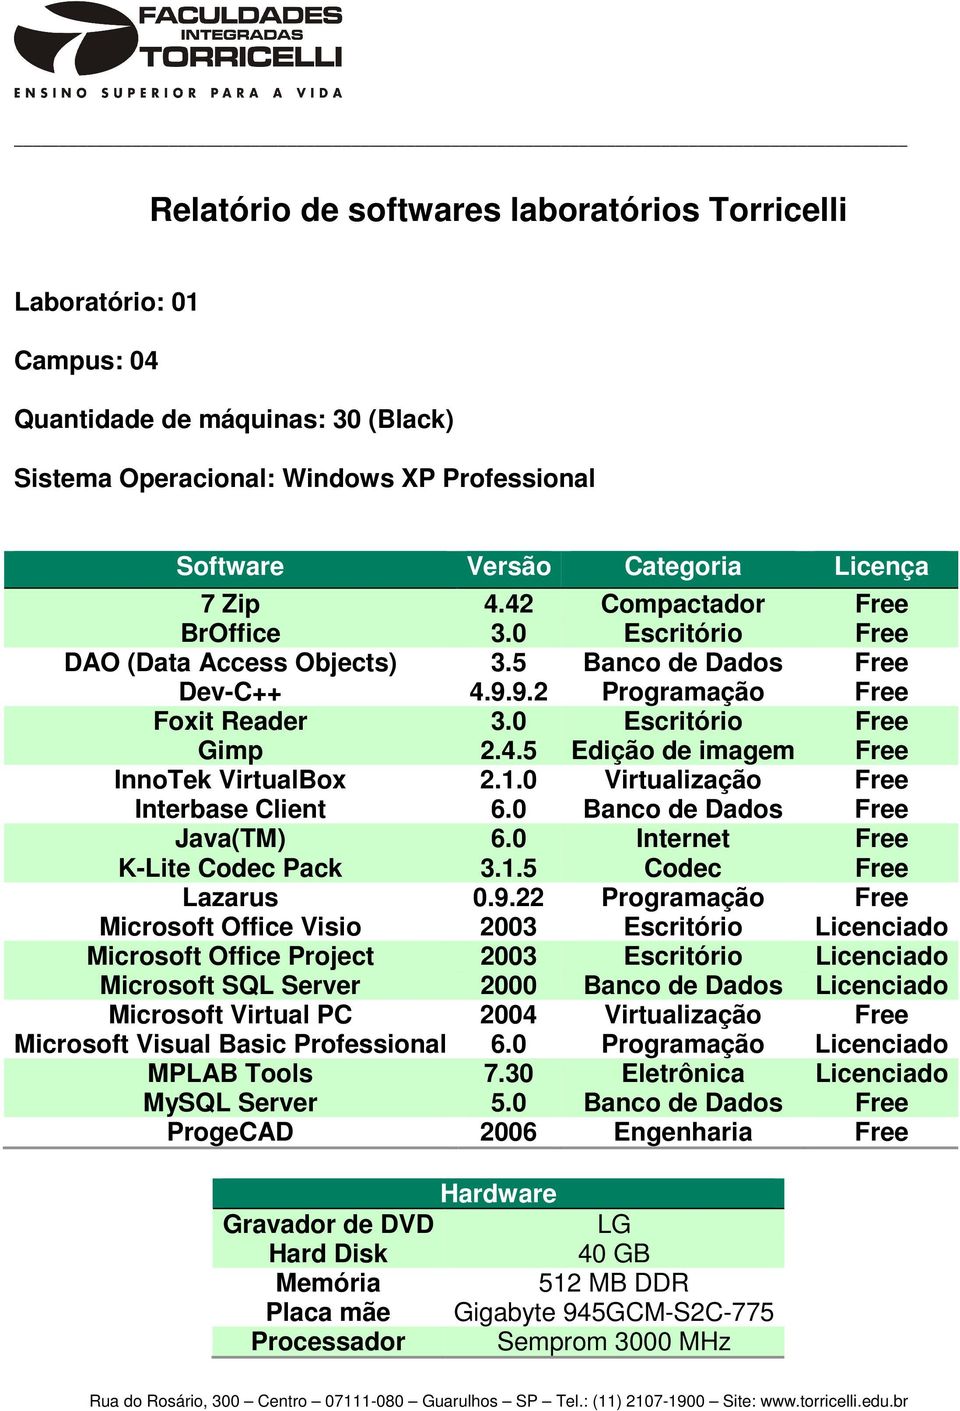 0 Banco de Dados Free K-Lite Codec Pack 3.1.5 Codec Free Lazarus 0.9.